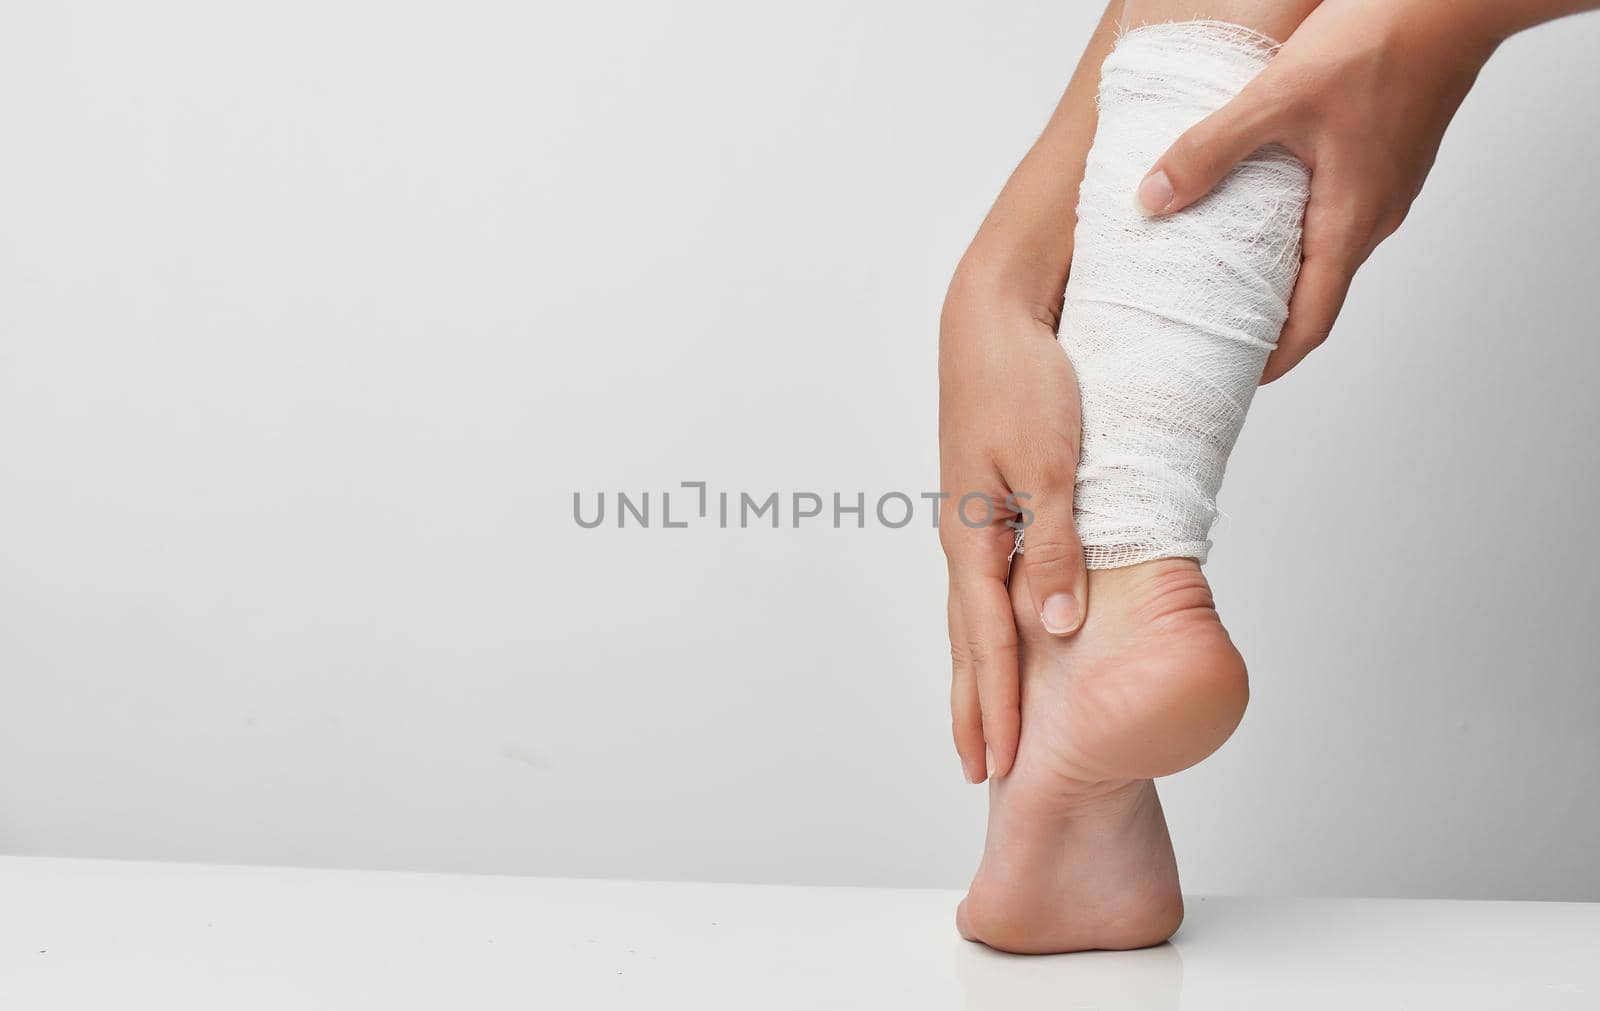 bandaged leg injury medicine gray background problems. High quality photo